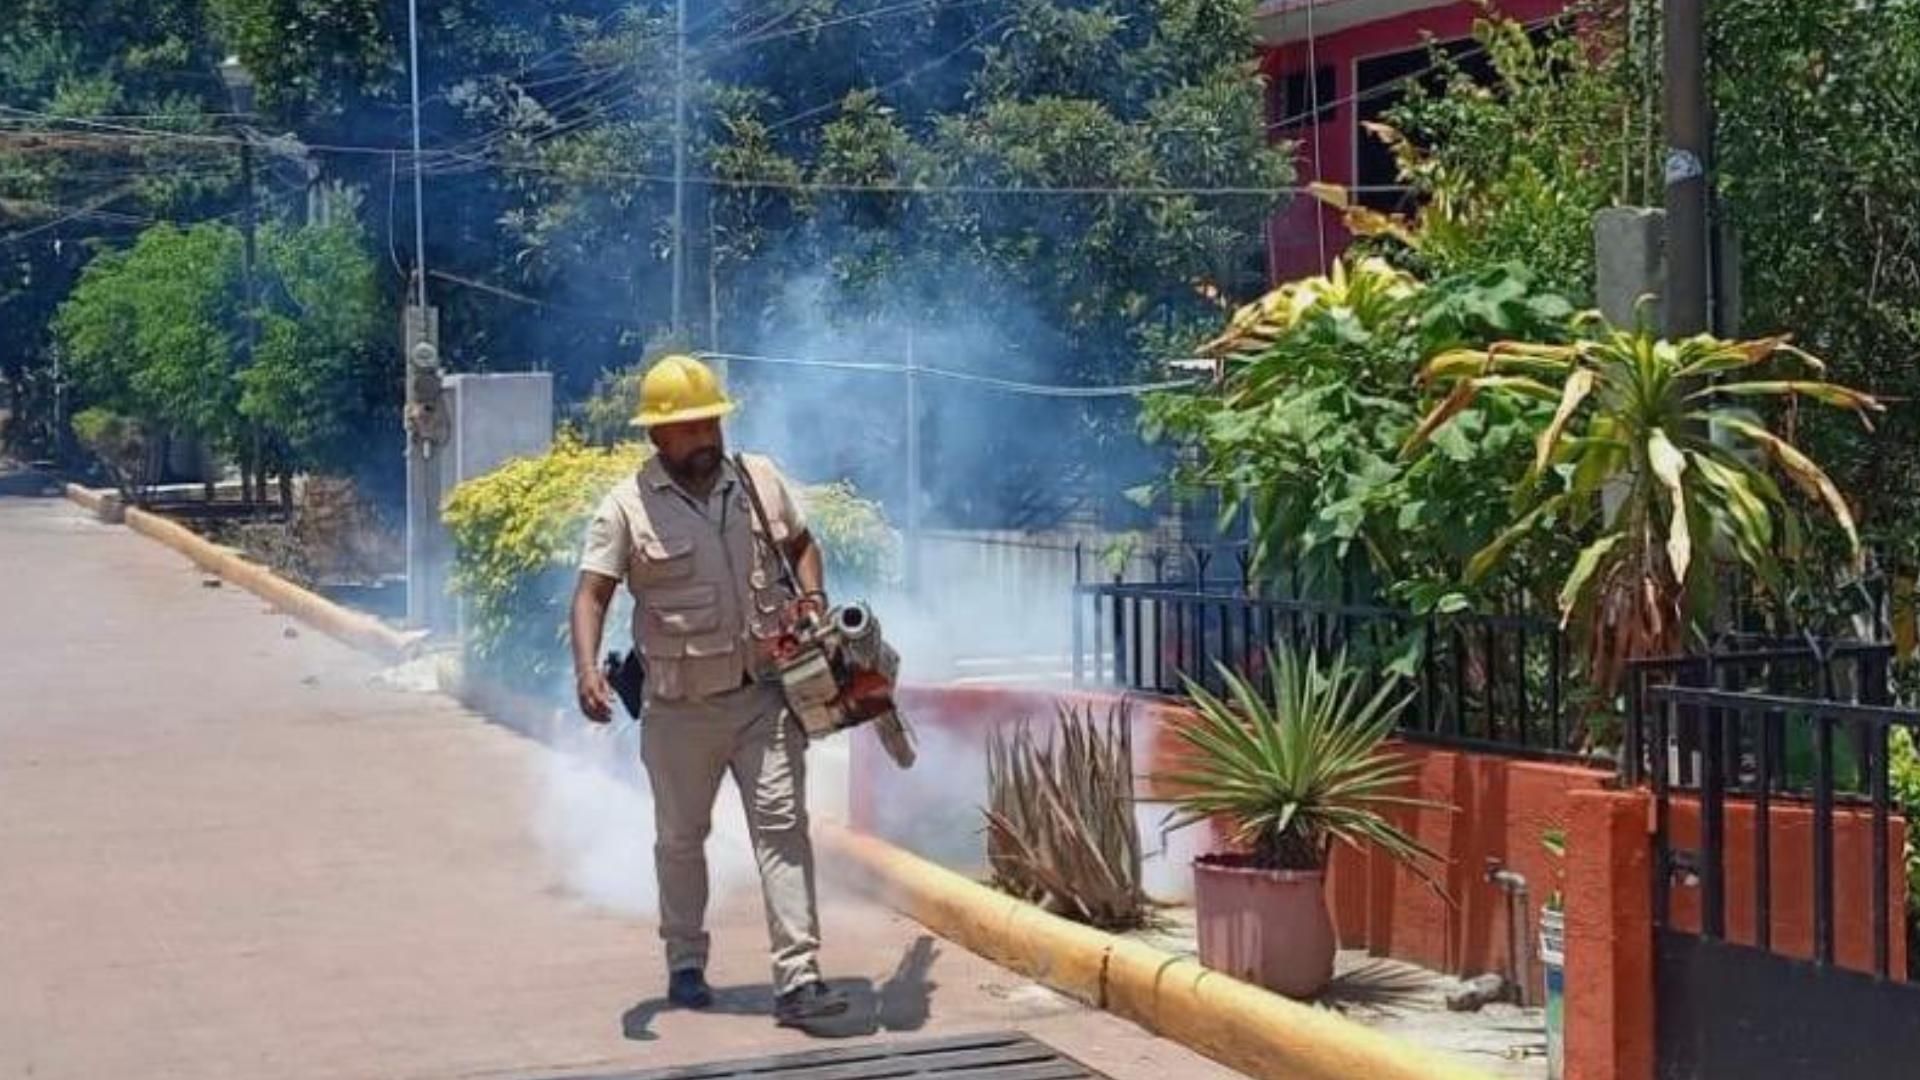 Casos de Dengue en México se Cuadruplican Respecto al Año Anterior 